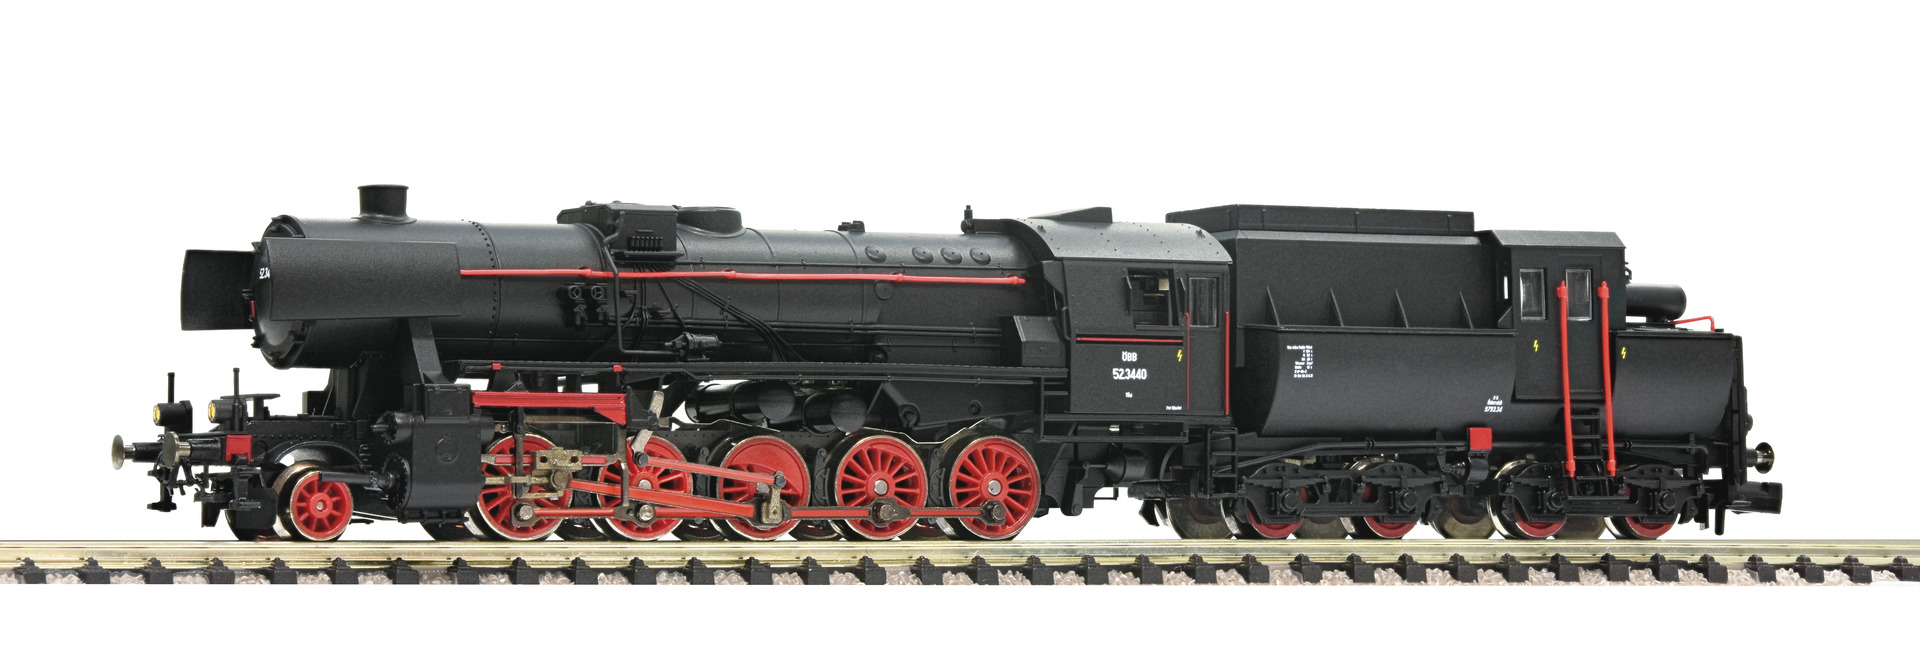 Fleischmann – Locomotora Vapor clase 52.3440, OBB, Epoca III-IV, Escala N, Ref: 715212.